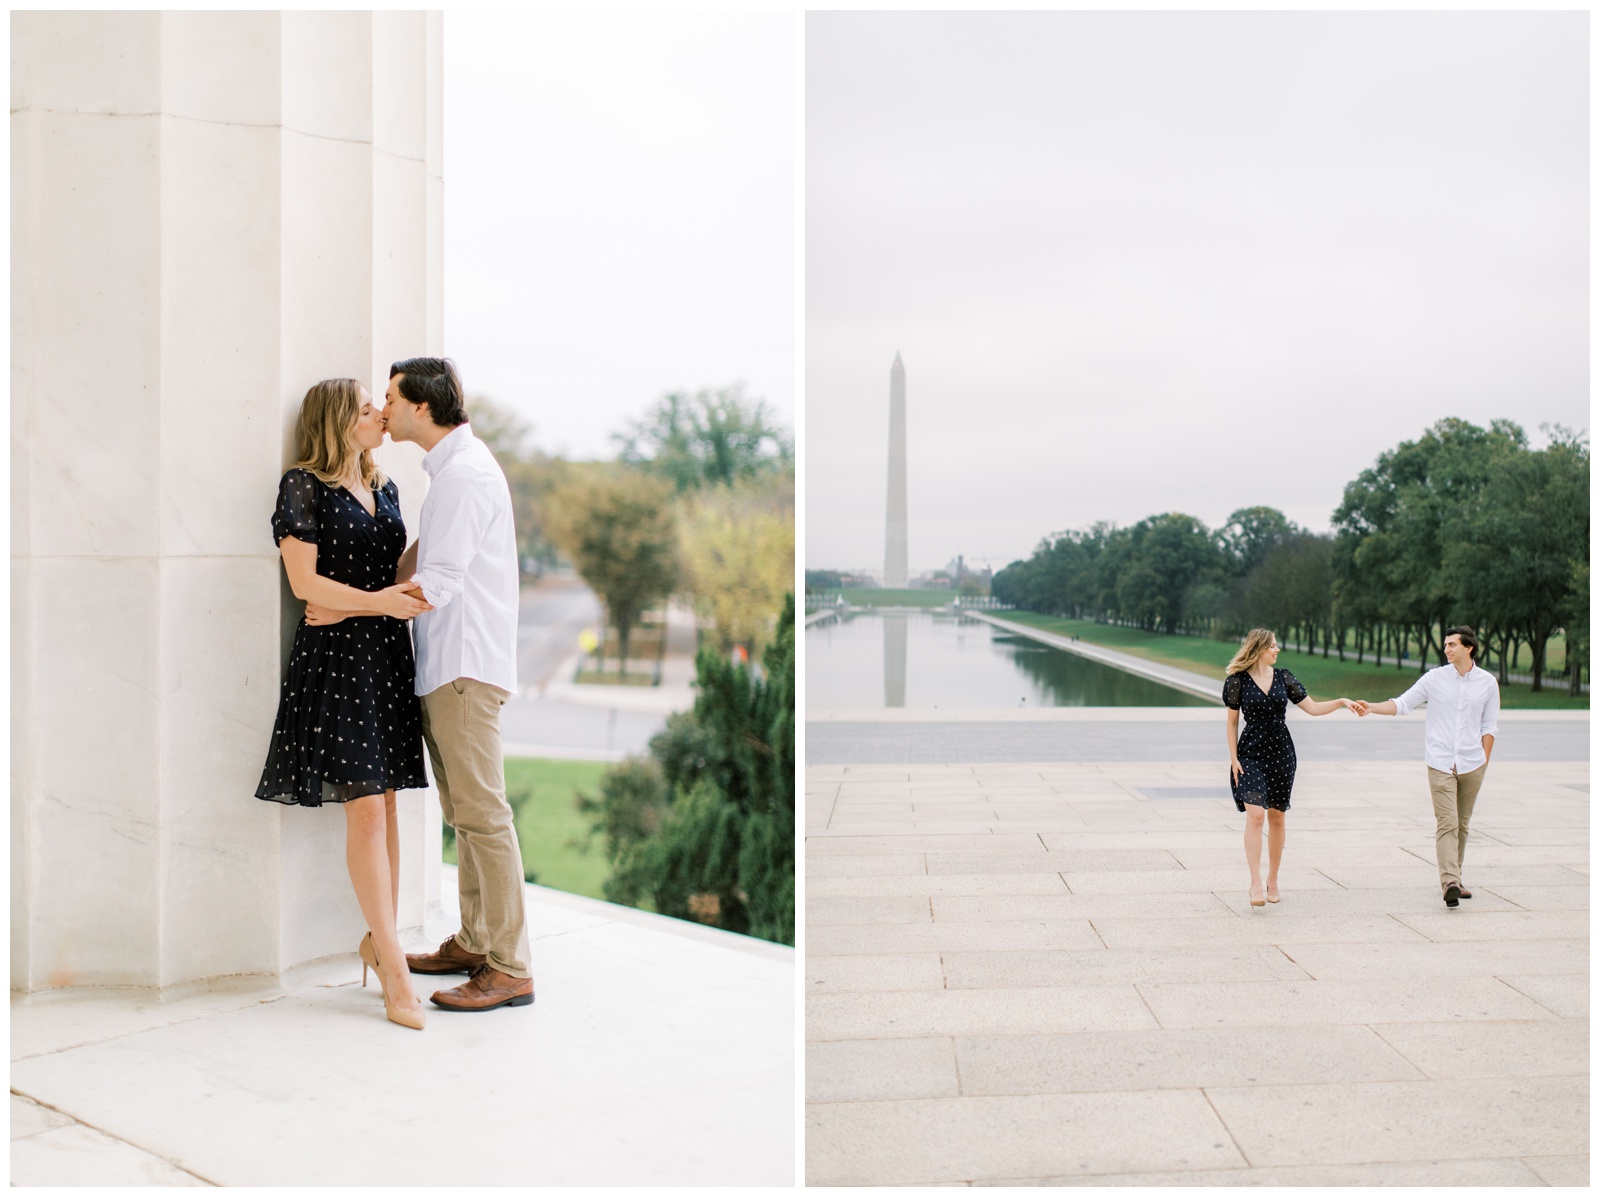 National Mall Engagement Session - Washington, DC Engagement Photographer - Neva Sullivan Photography_0020.jpg